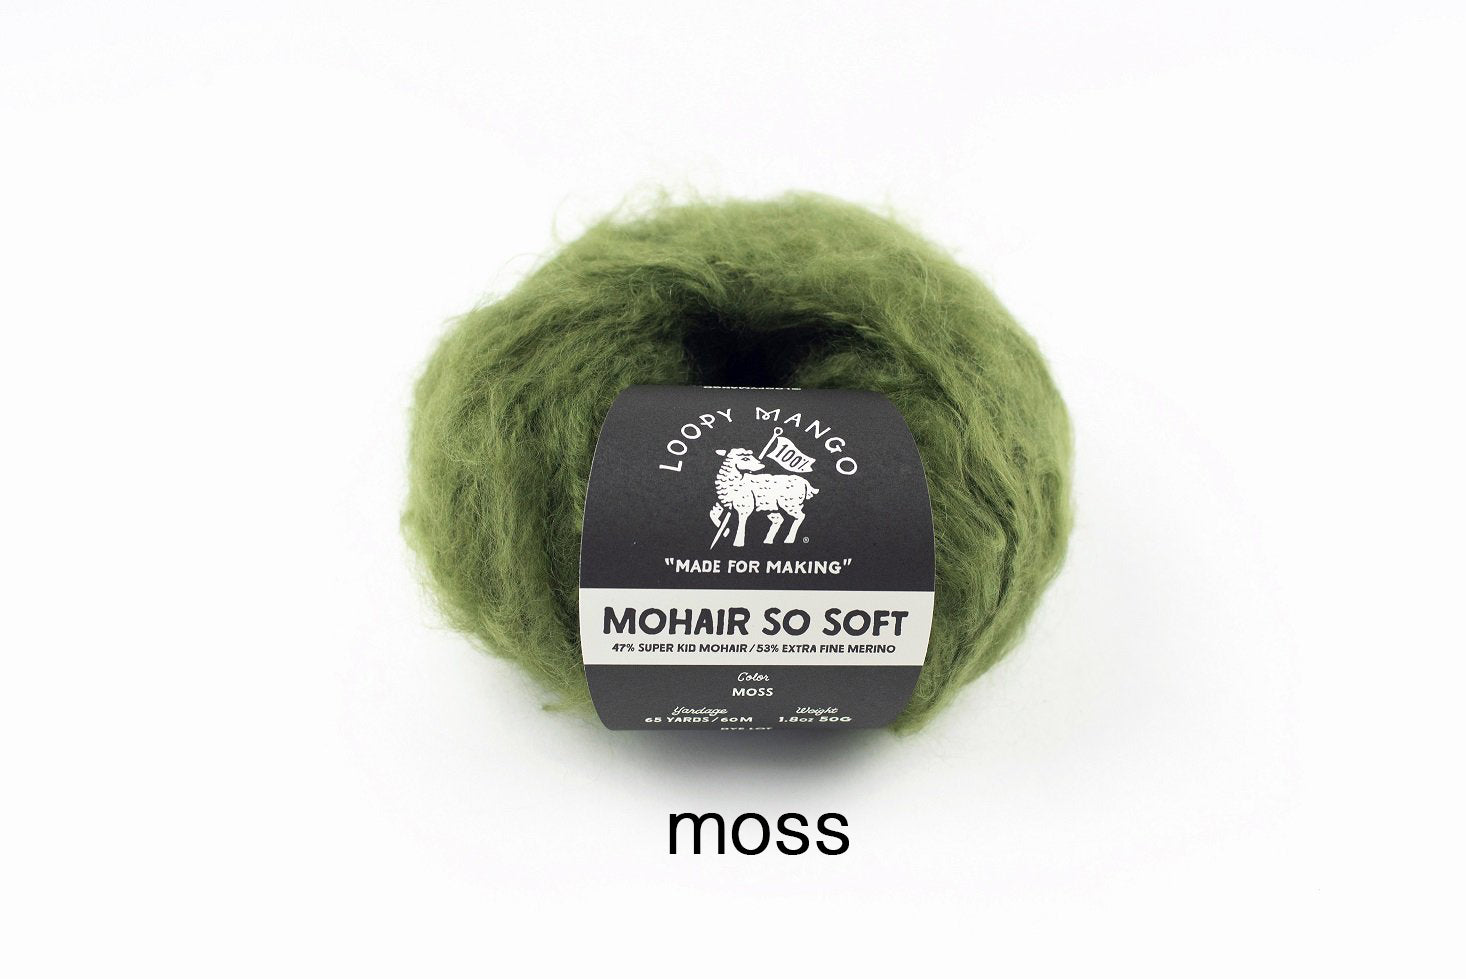 Moss.jpg